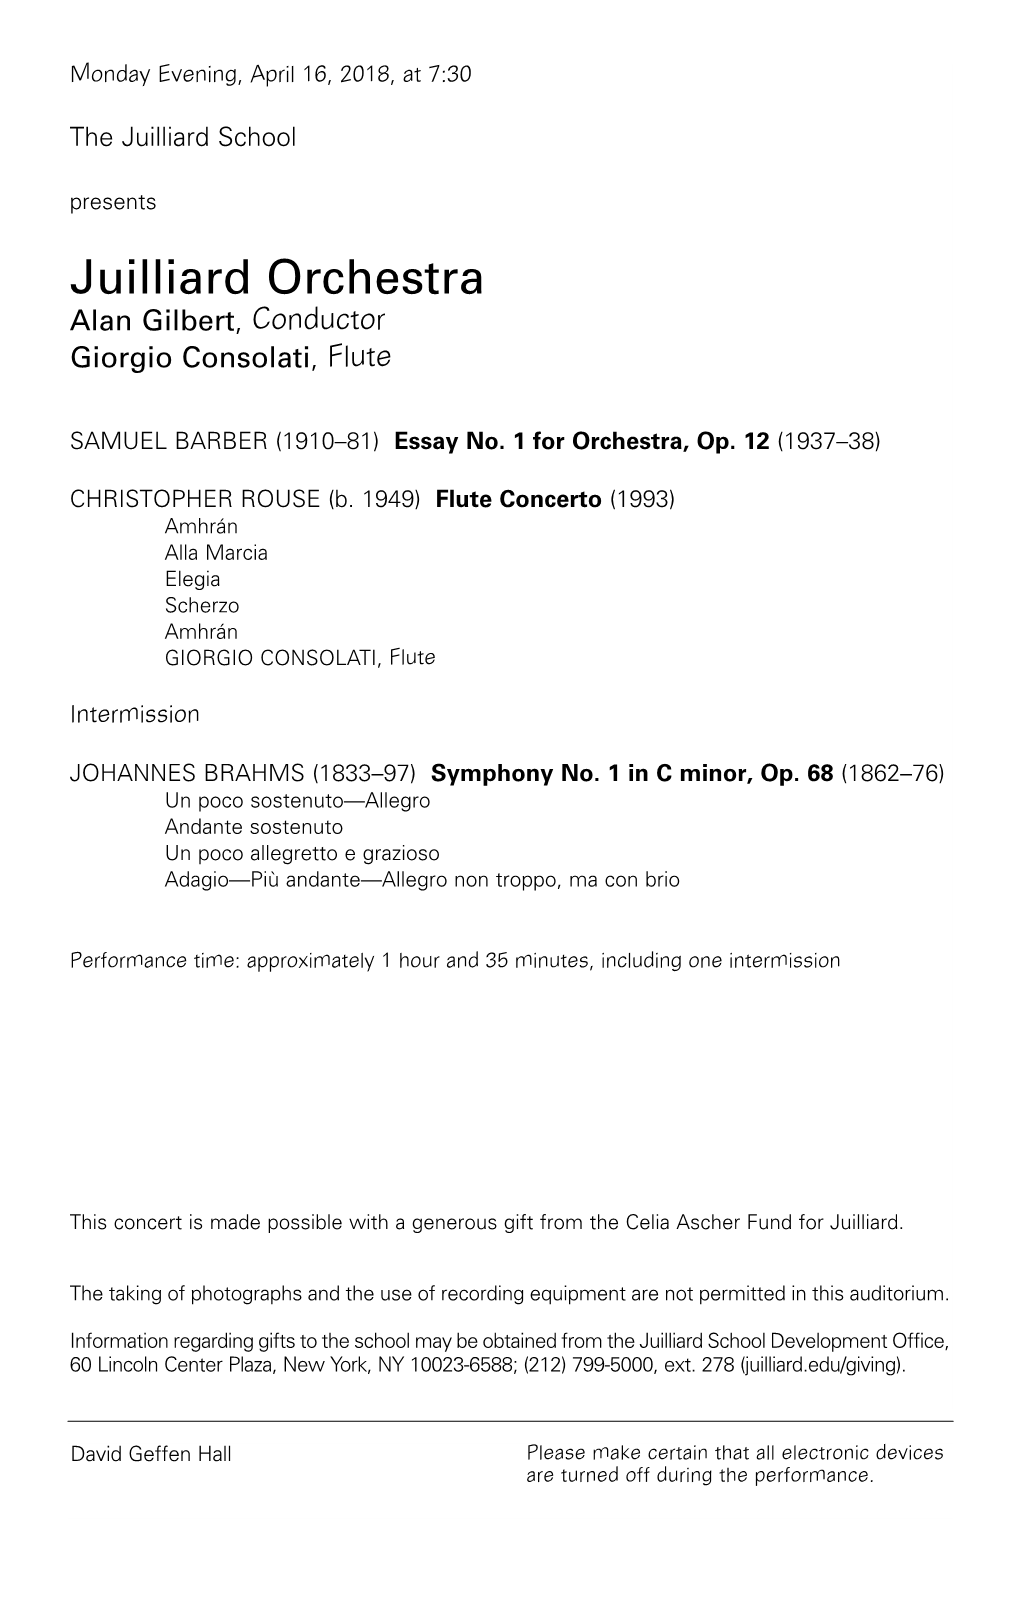 Juilliard Orchestra Alan Gilbert , Conductor Giorgio Consolati , Flute